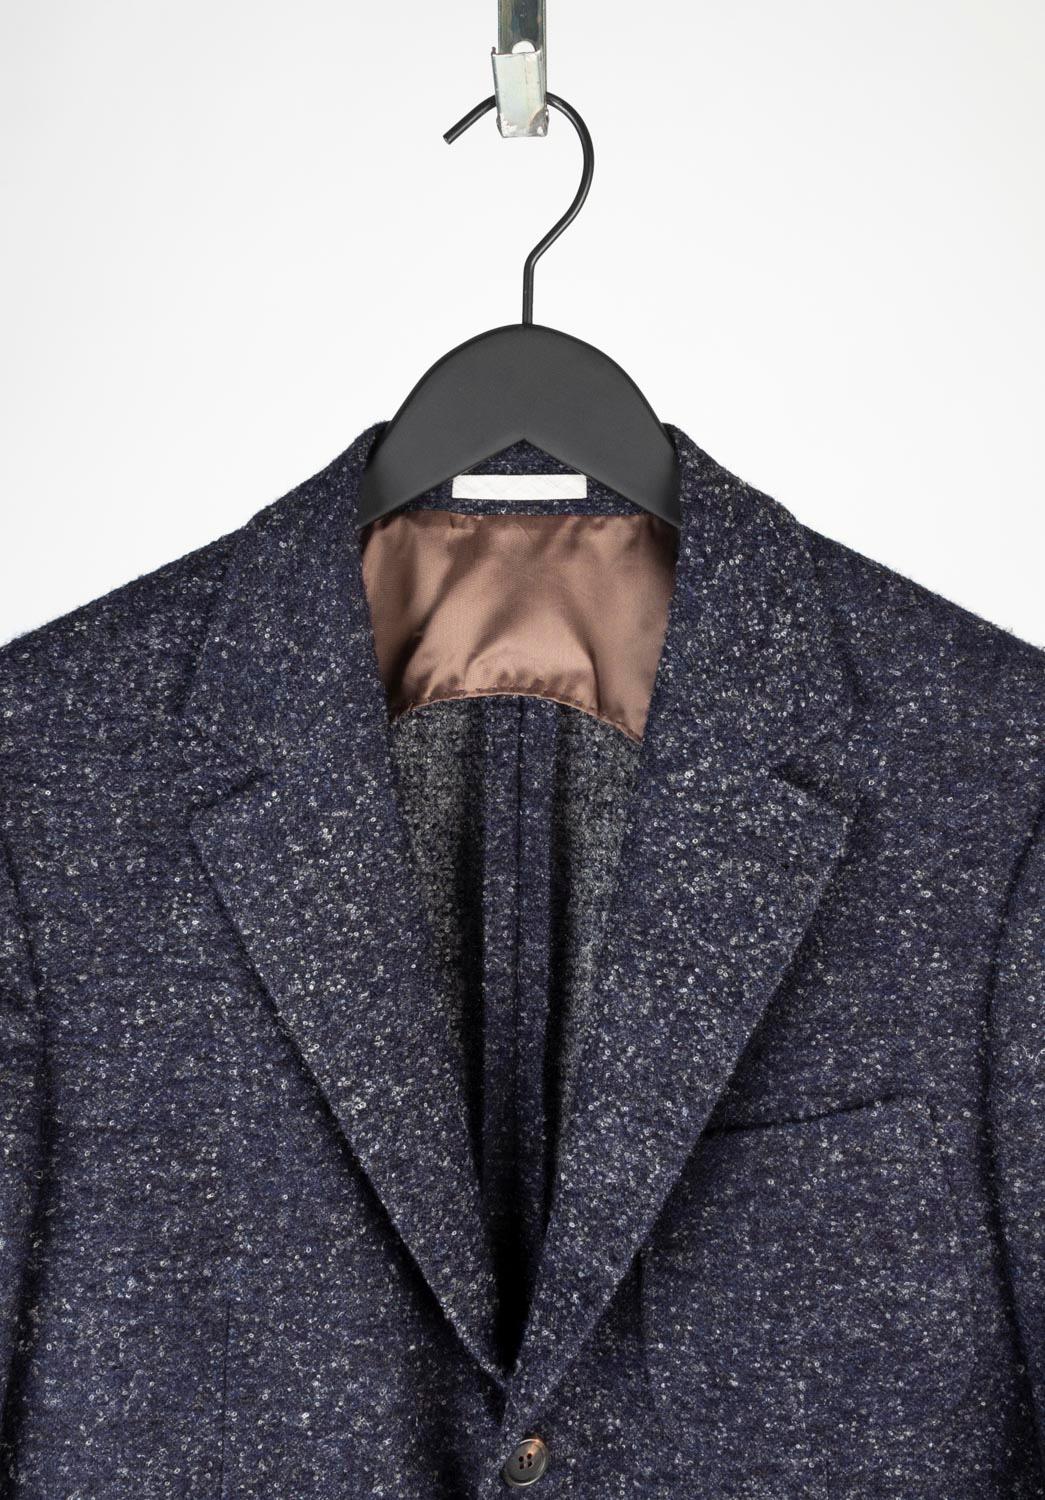 100% authentique Brunello Cucinelli blazer bleu gris, S644 
Couleur : bleu/gris
(La couleur réelle peut varier légèrement en raison de l'interprétation individuelle de l'écran de l'ordinateur).
MATERIAL : 100% laine
Taille de l'étiquette : ITA48,